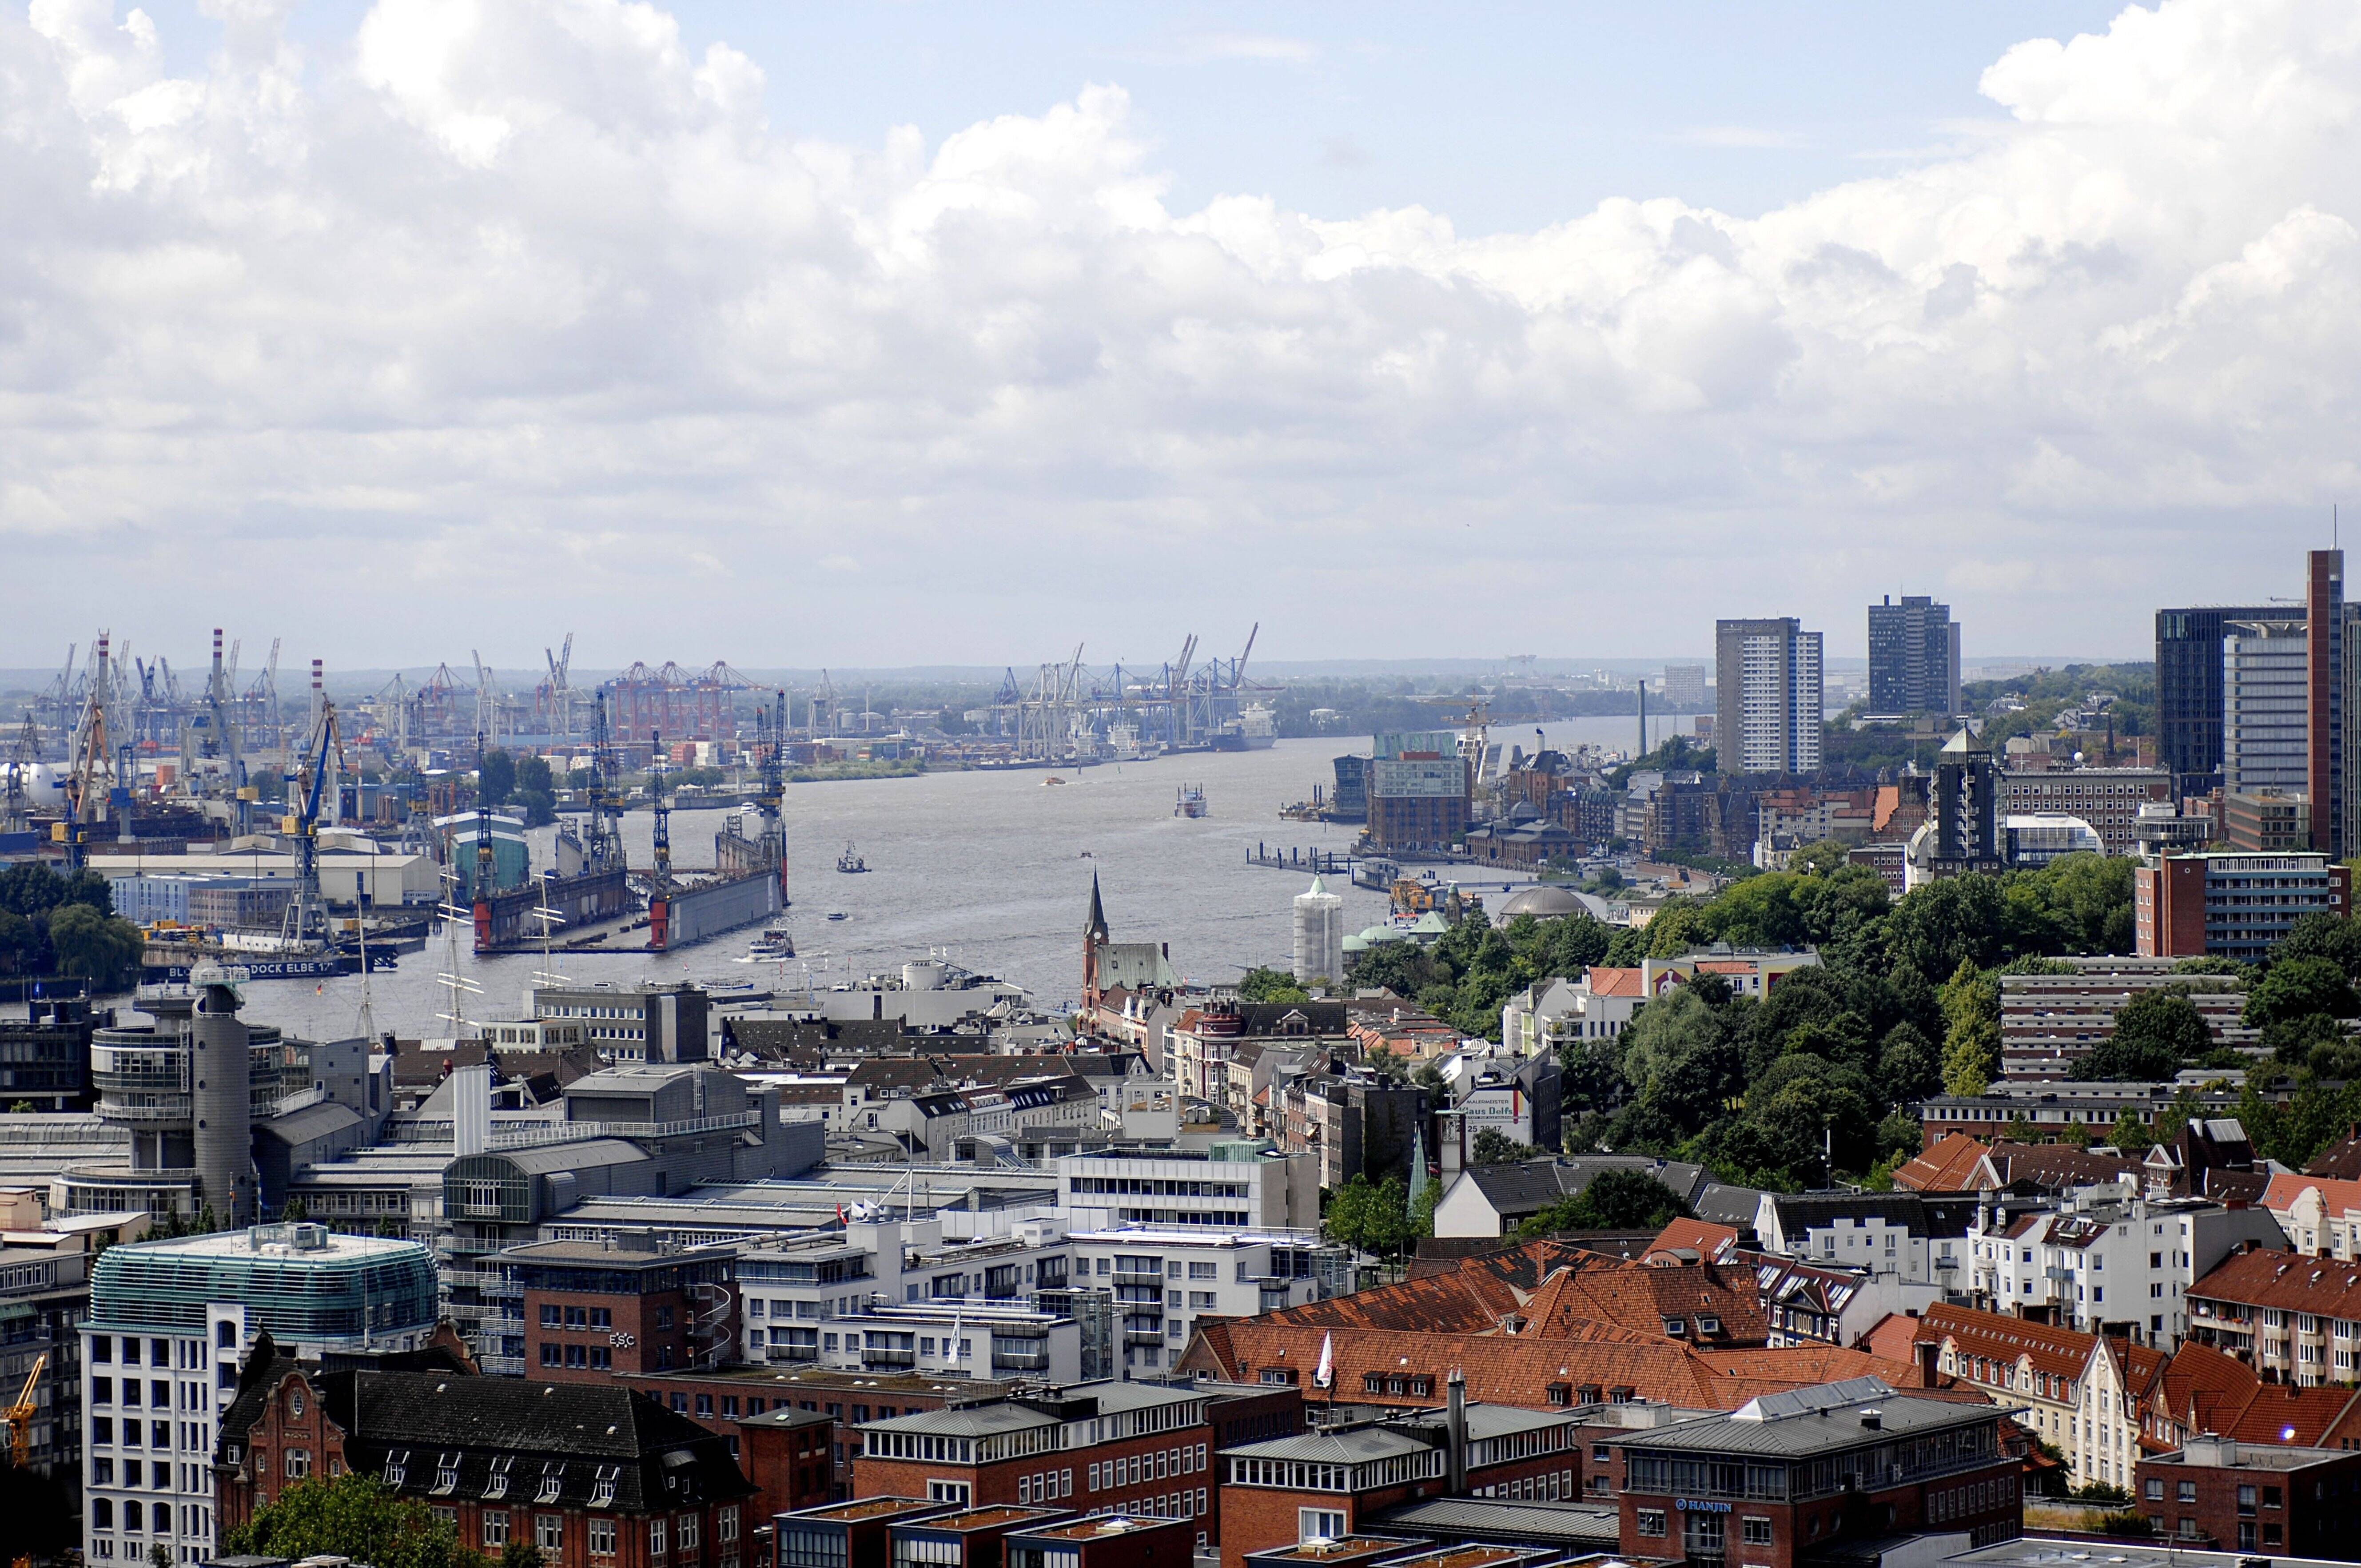 Hamburg wächst. Damit alle eine bezahlbare Wohnungen finden, hat sie Stadt unter Bürgermeister Olaf Scholz ein Bündnis für das Wohnen ins Leben gerufen.